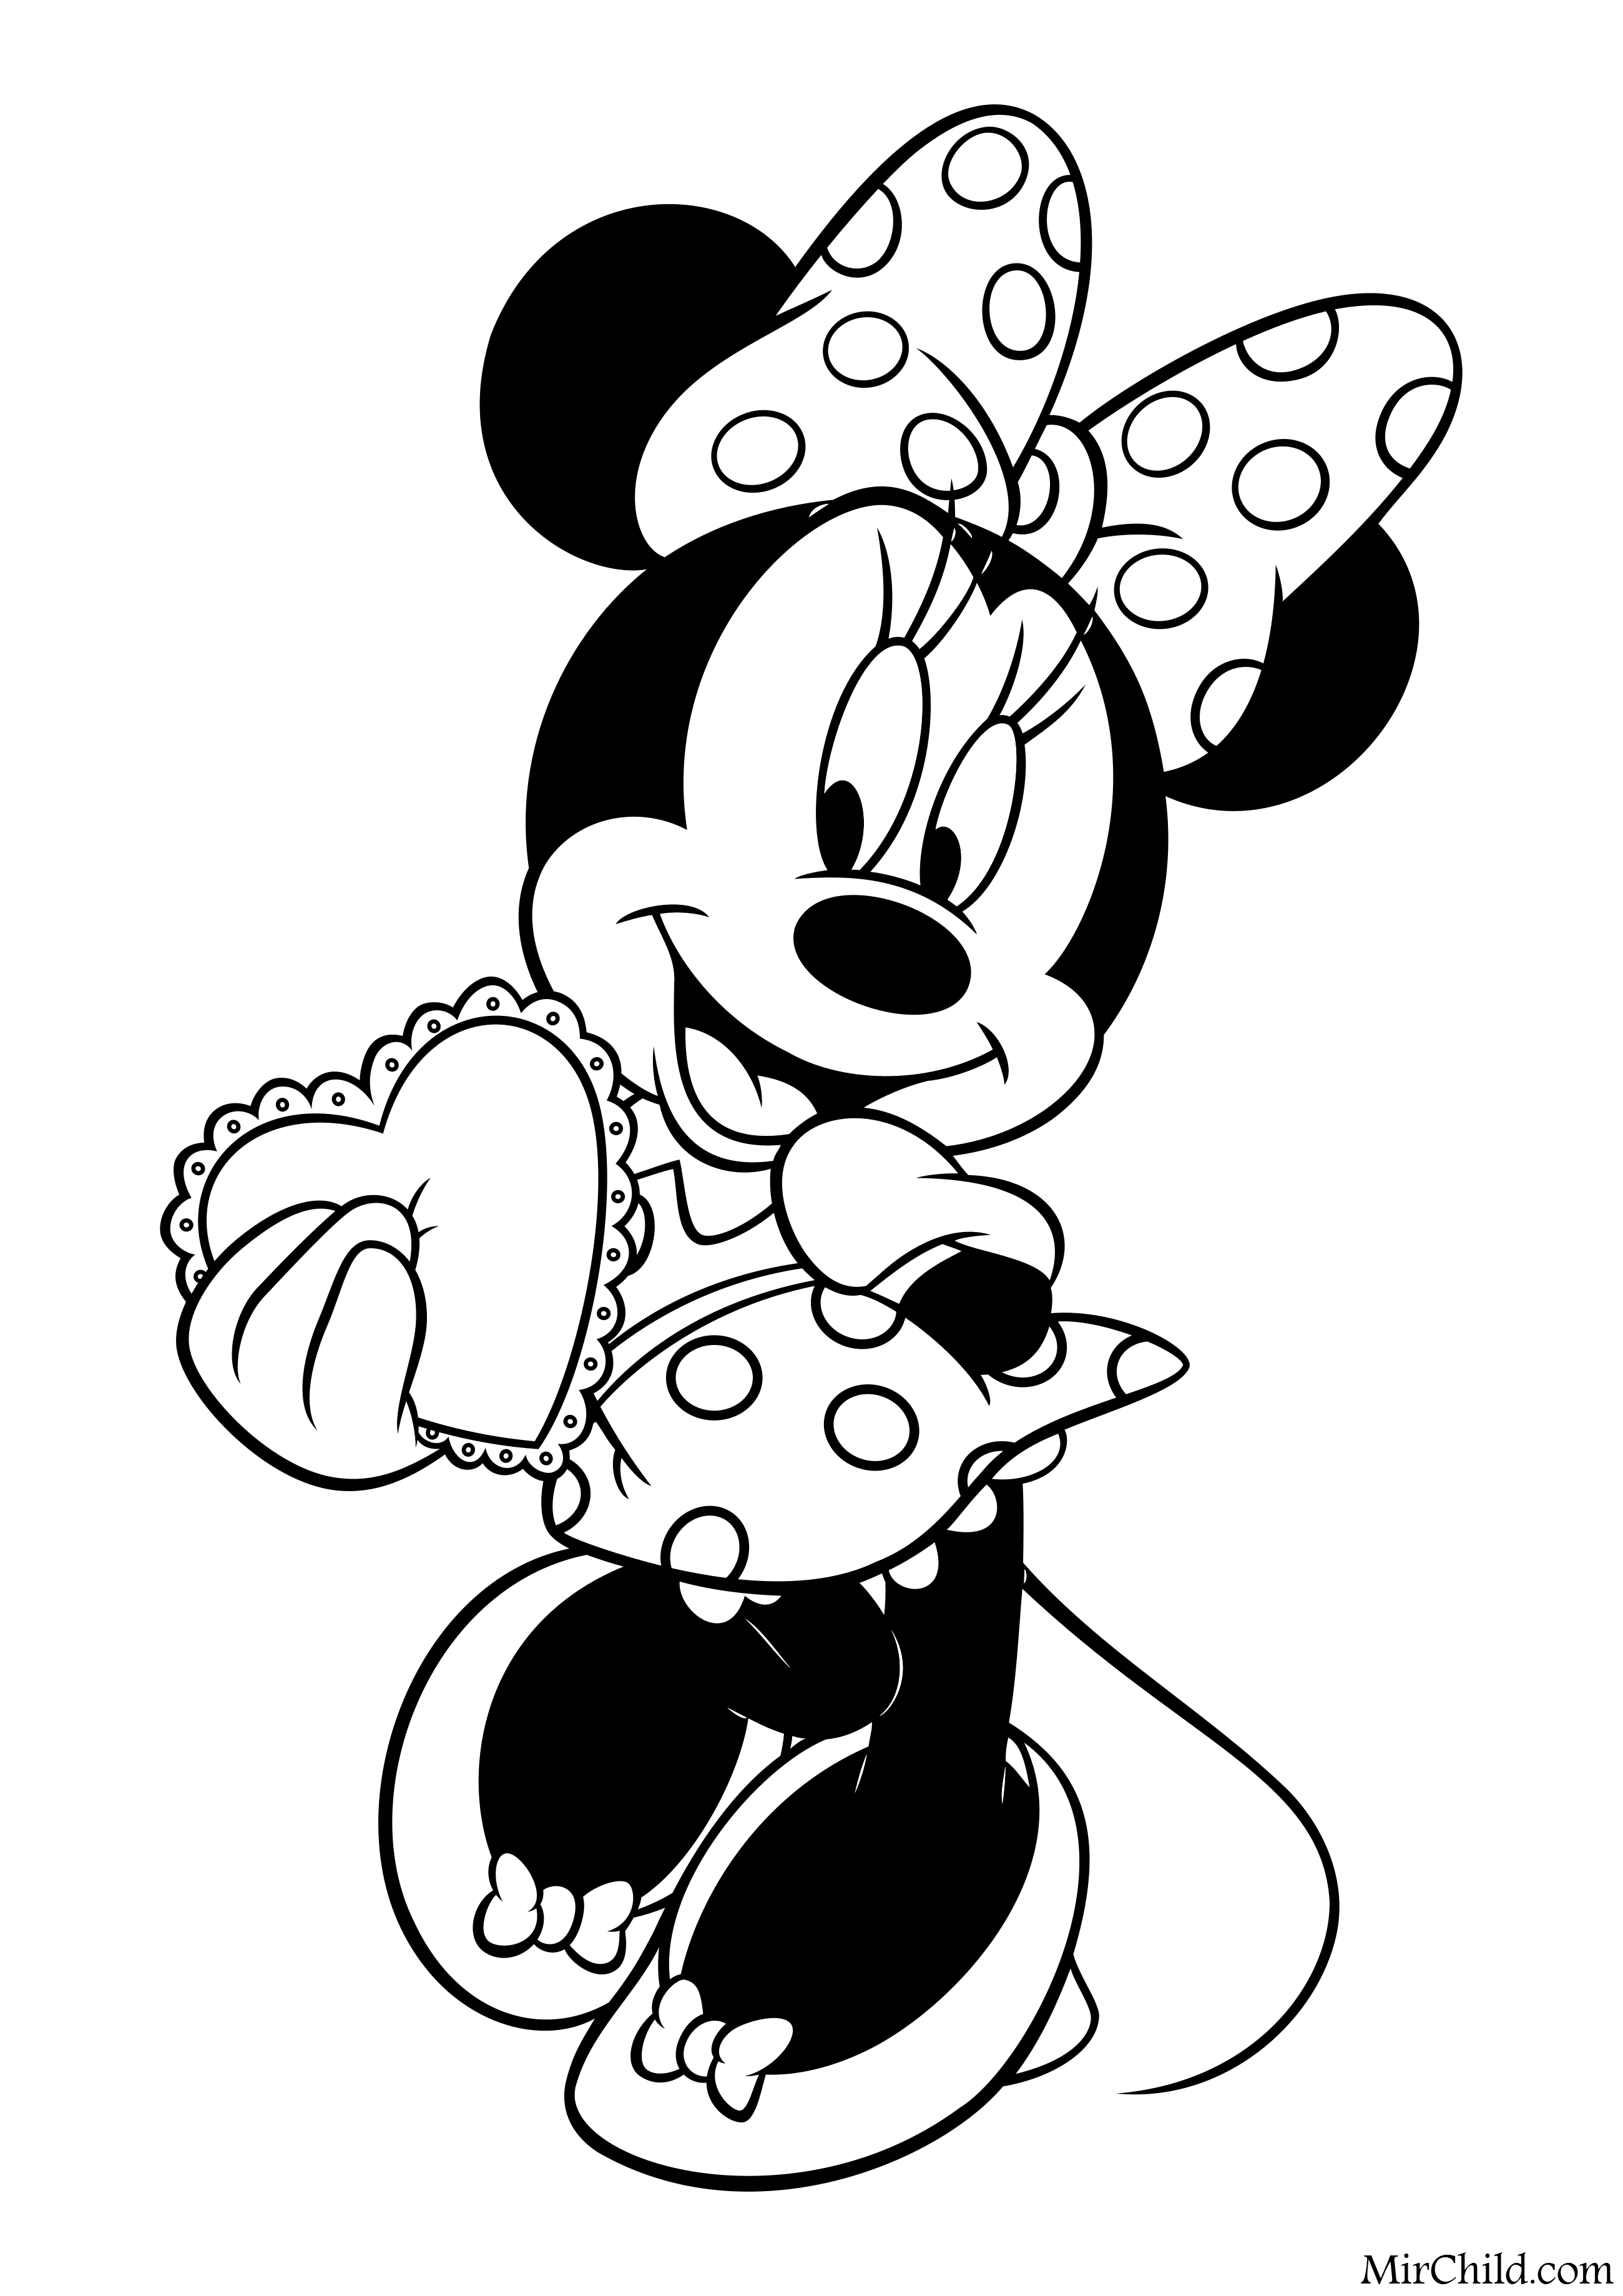 Раскраски из диснеевских мультфильмов про Микки Мауса (Mickey Mouse) скачать